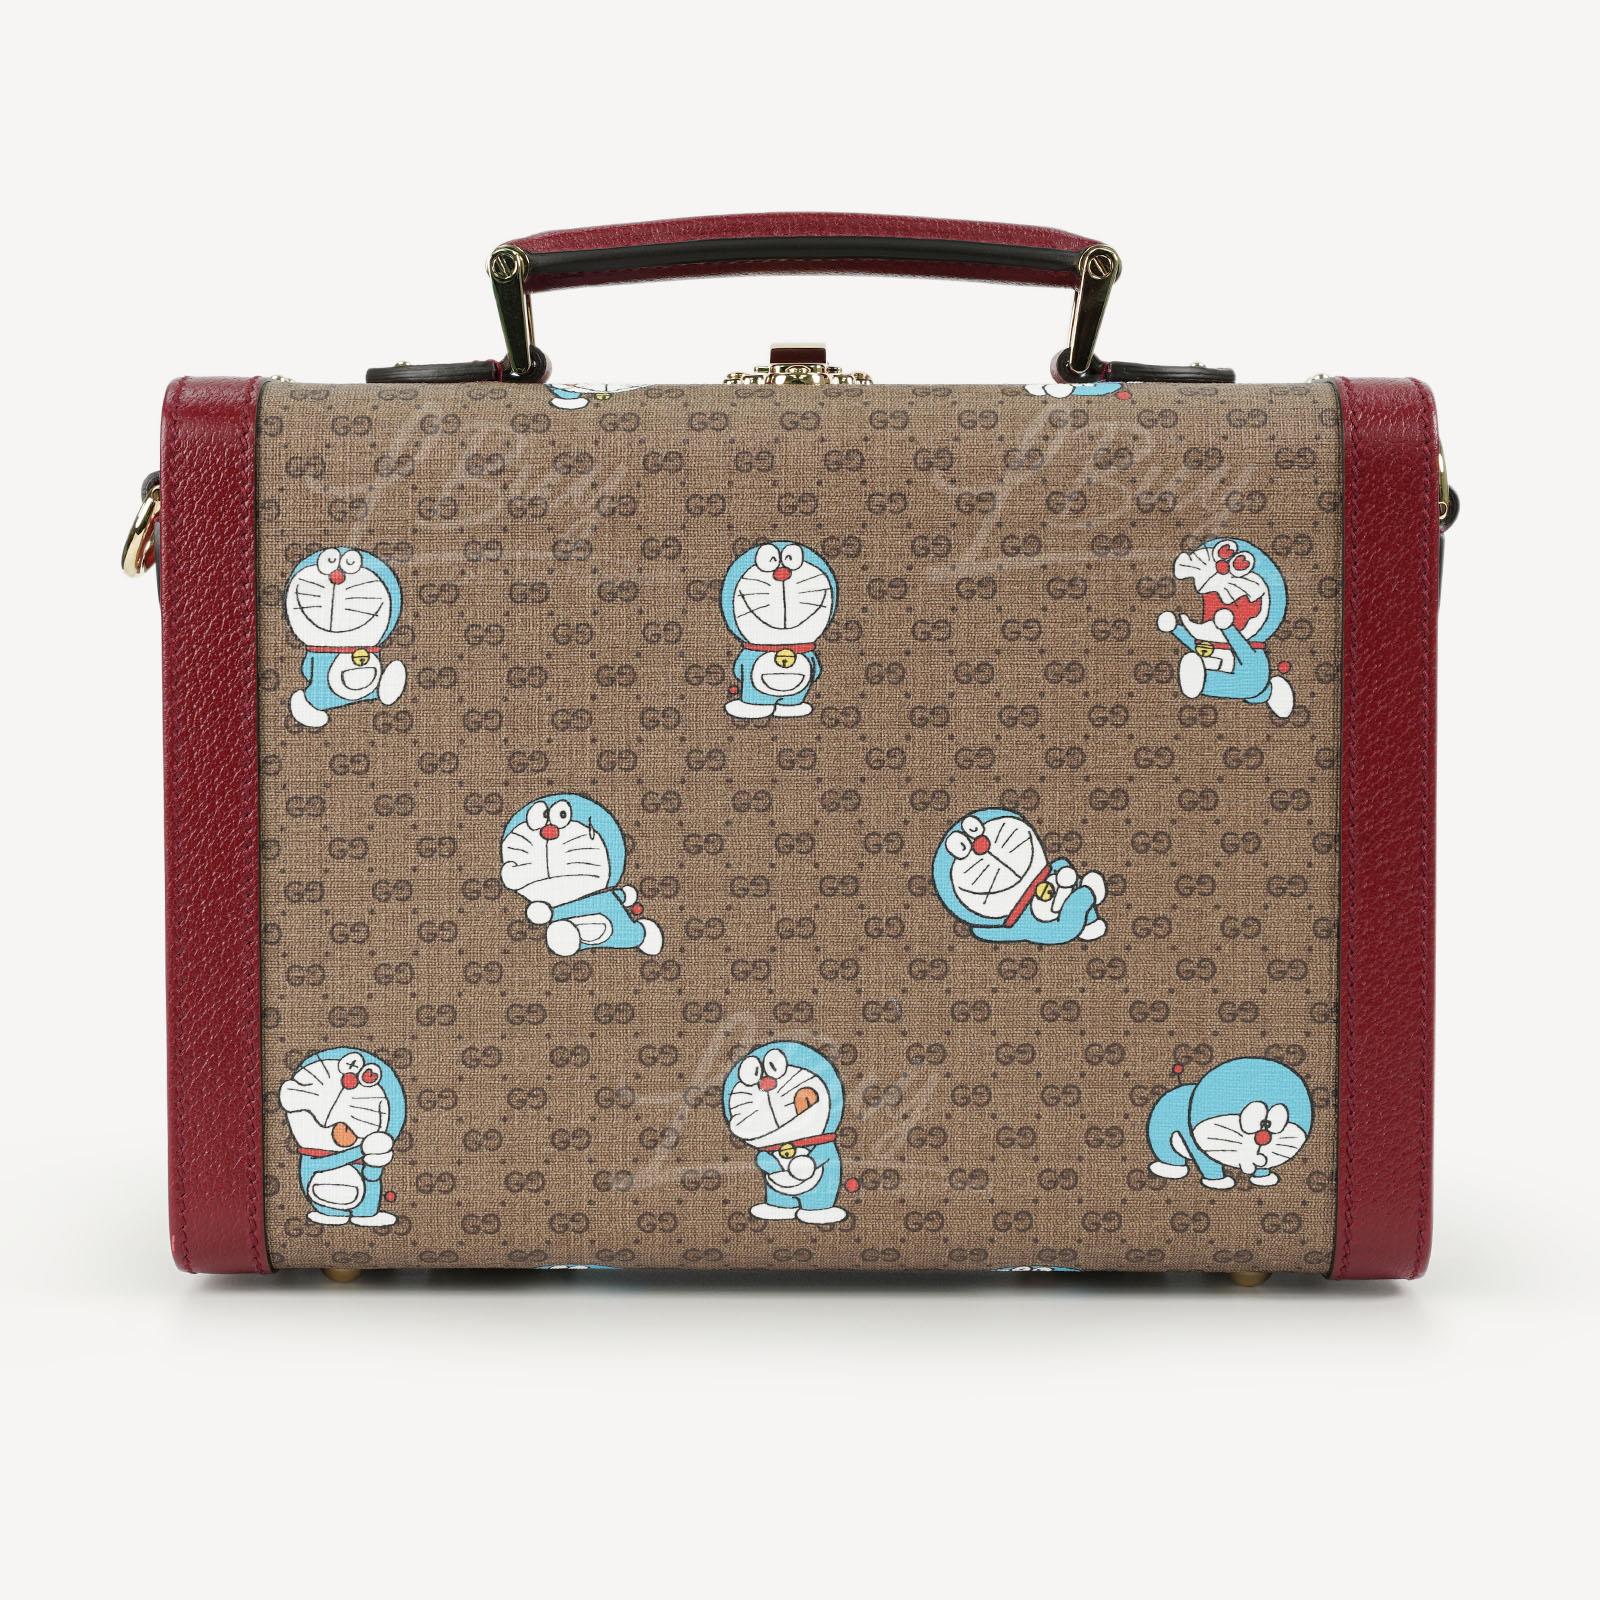 Doraemon x Gucci Luggage Bag 6335872